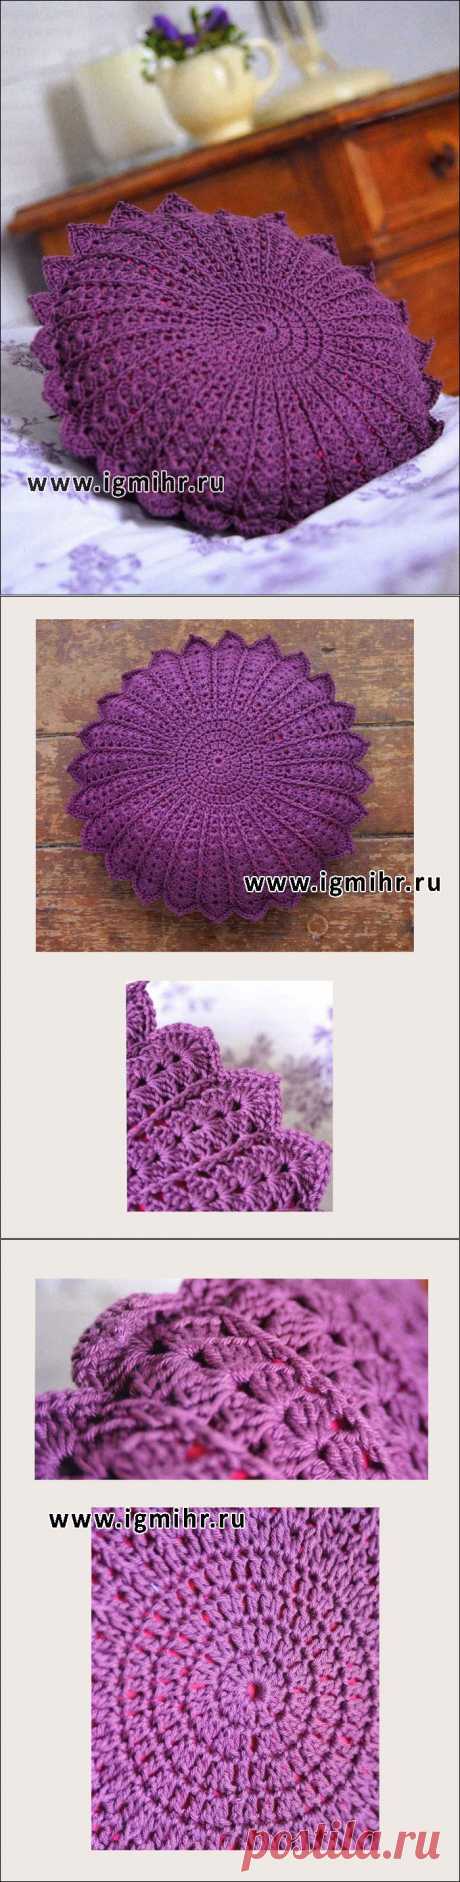 Круглая подушка в форме цветка с лепестками. Крючок. / igmihrru.ru